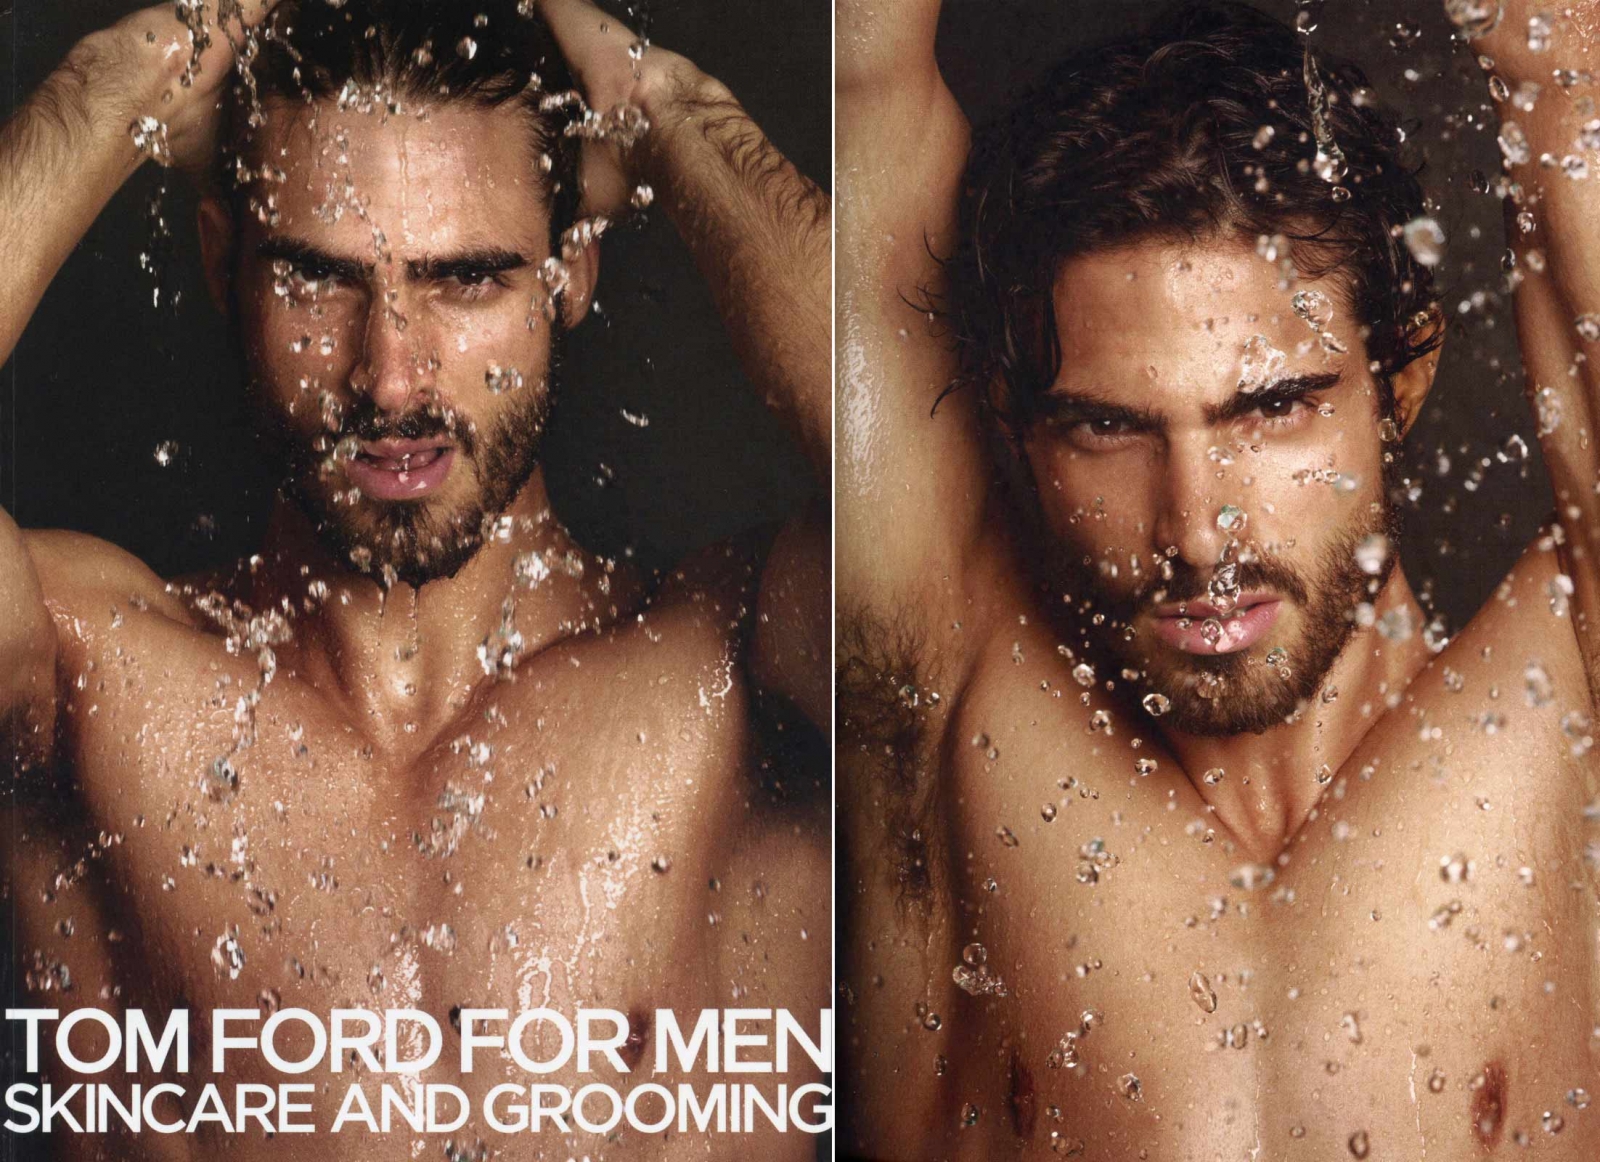 blog de moda | beleza | sobre beleza | linha de beleza masculina | produtos de beleza para homens | Tom Ford | linha de beleza masculina Tom Ford